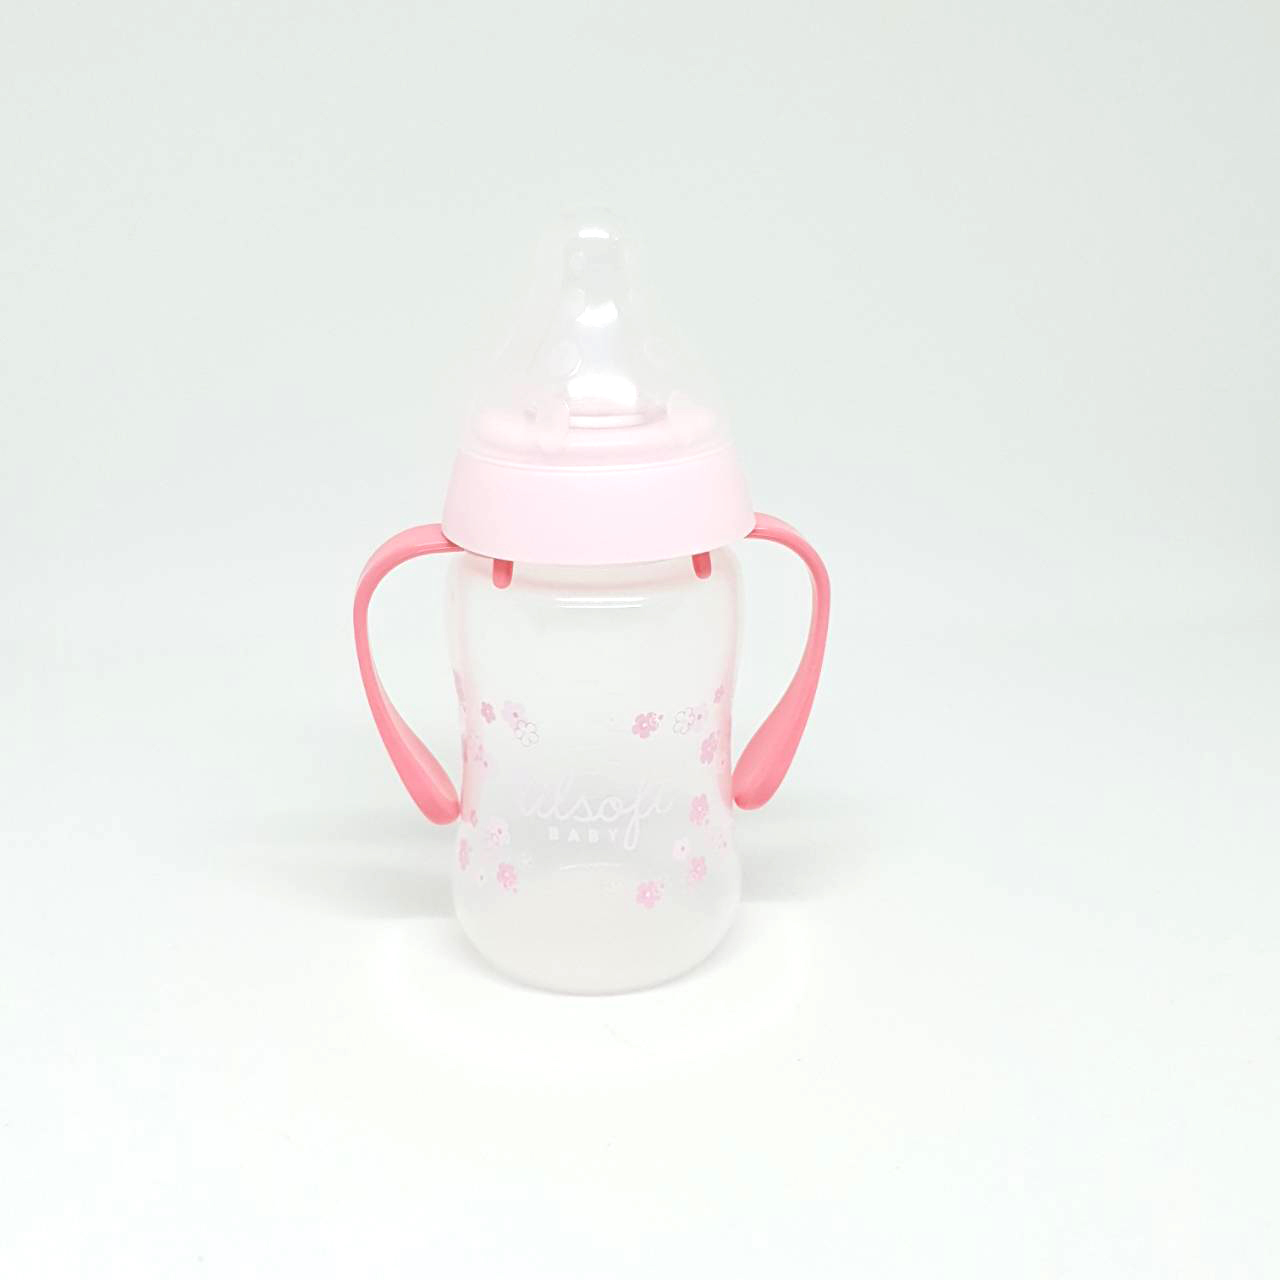 NUBORN แก้วหัดดื่ม ถ้วยหัดดื่ม ขวดน้ำสำหรับเด็ก  lilsoft baby 150 ml (5oz)